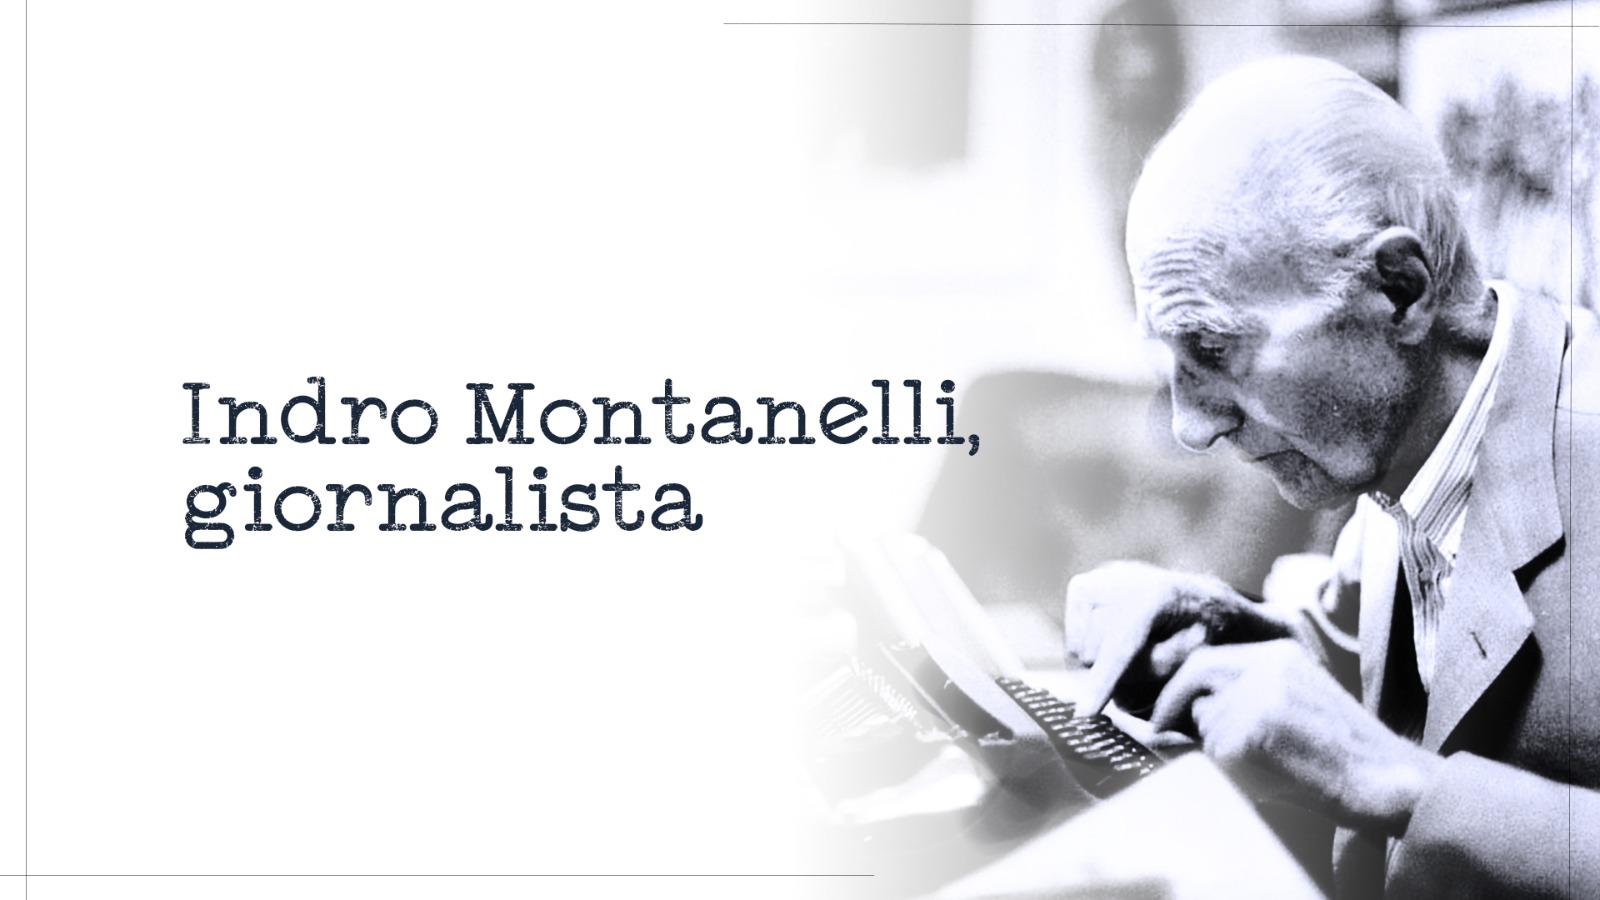 Confronto a più voci su Indro Montanelli